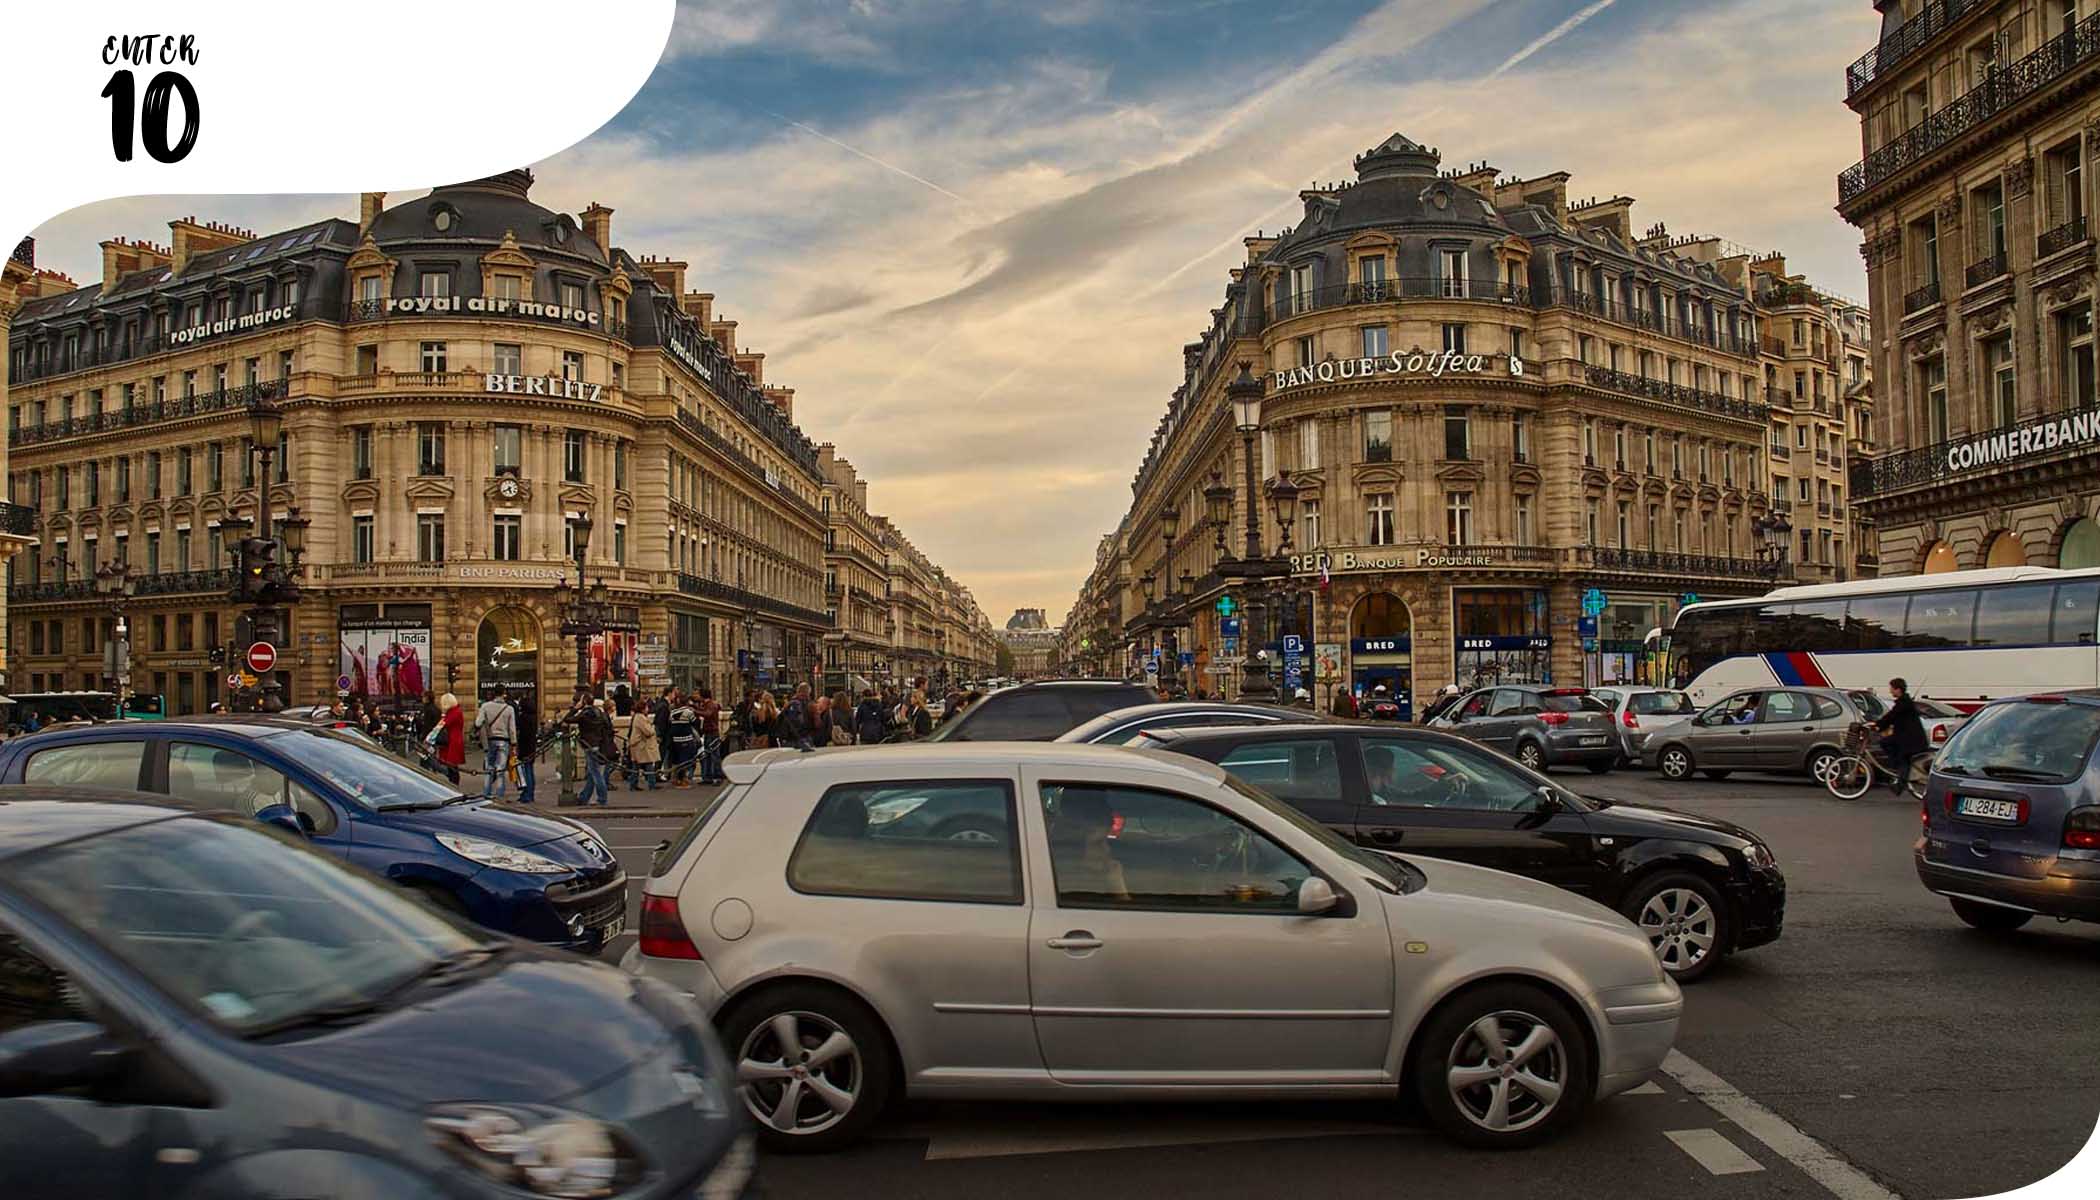 Париж хочет запретить автомобильное движение в центре города к 2022 году